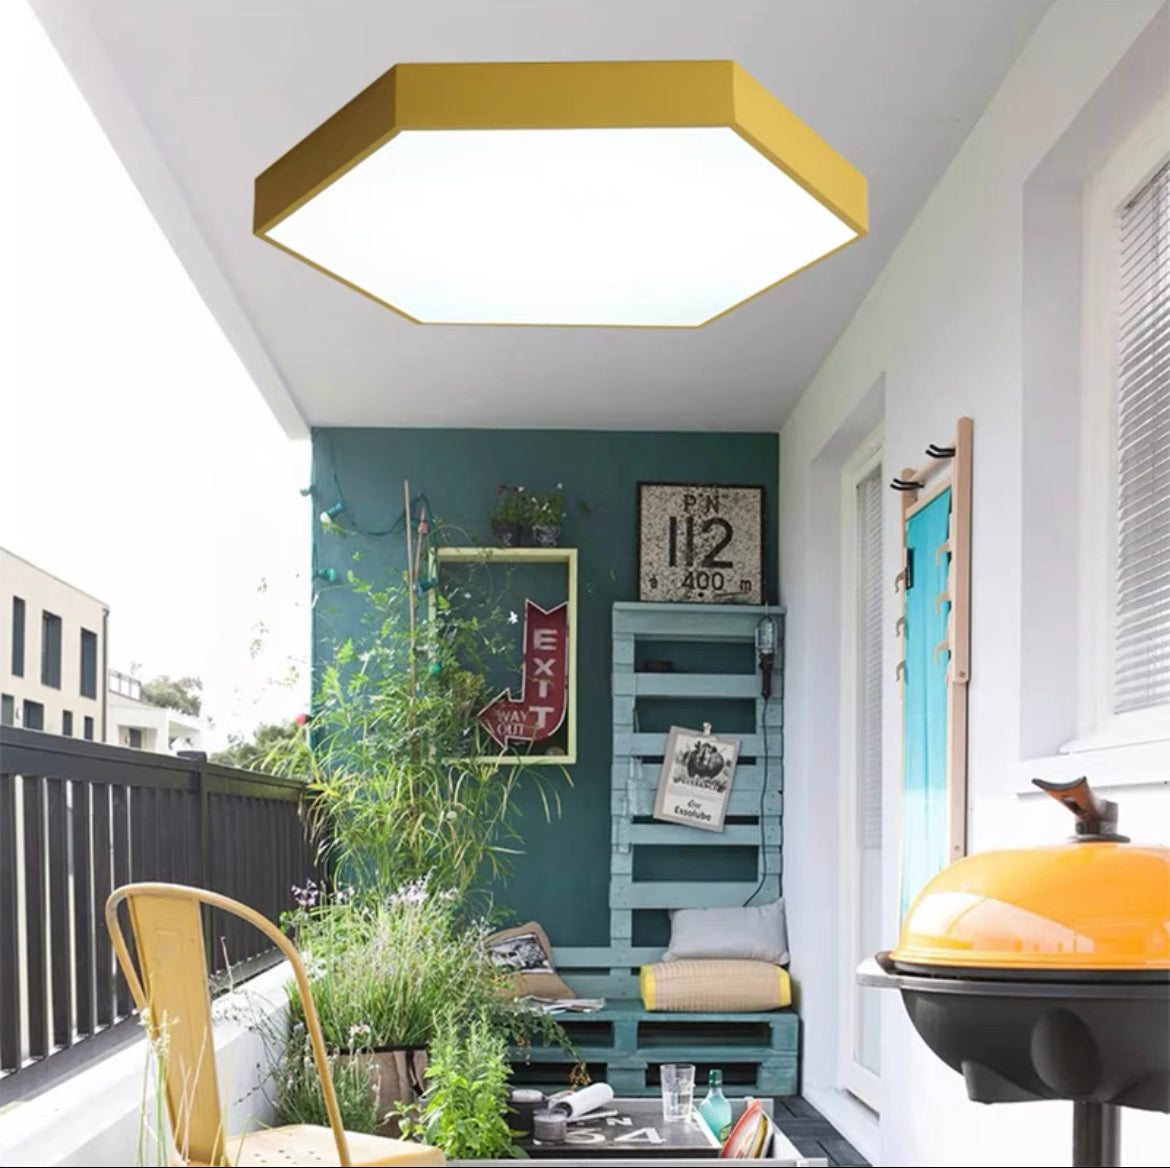 Morandi Moderne LED Deckenleuchte Weiß/Schwarz Esszimmer/Wohnzimmer